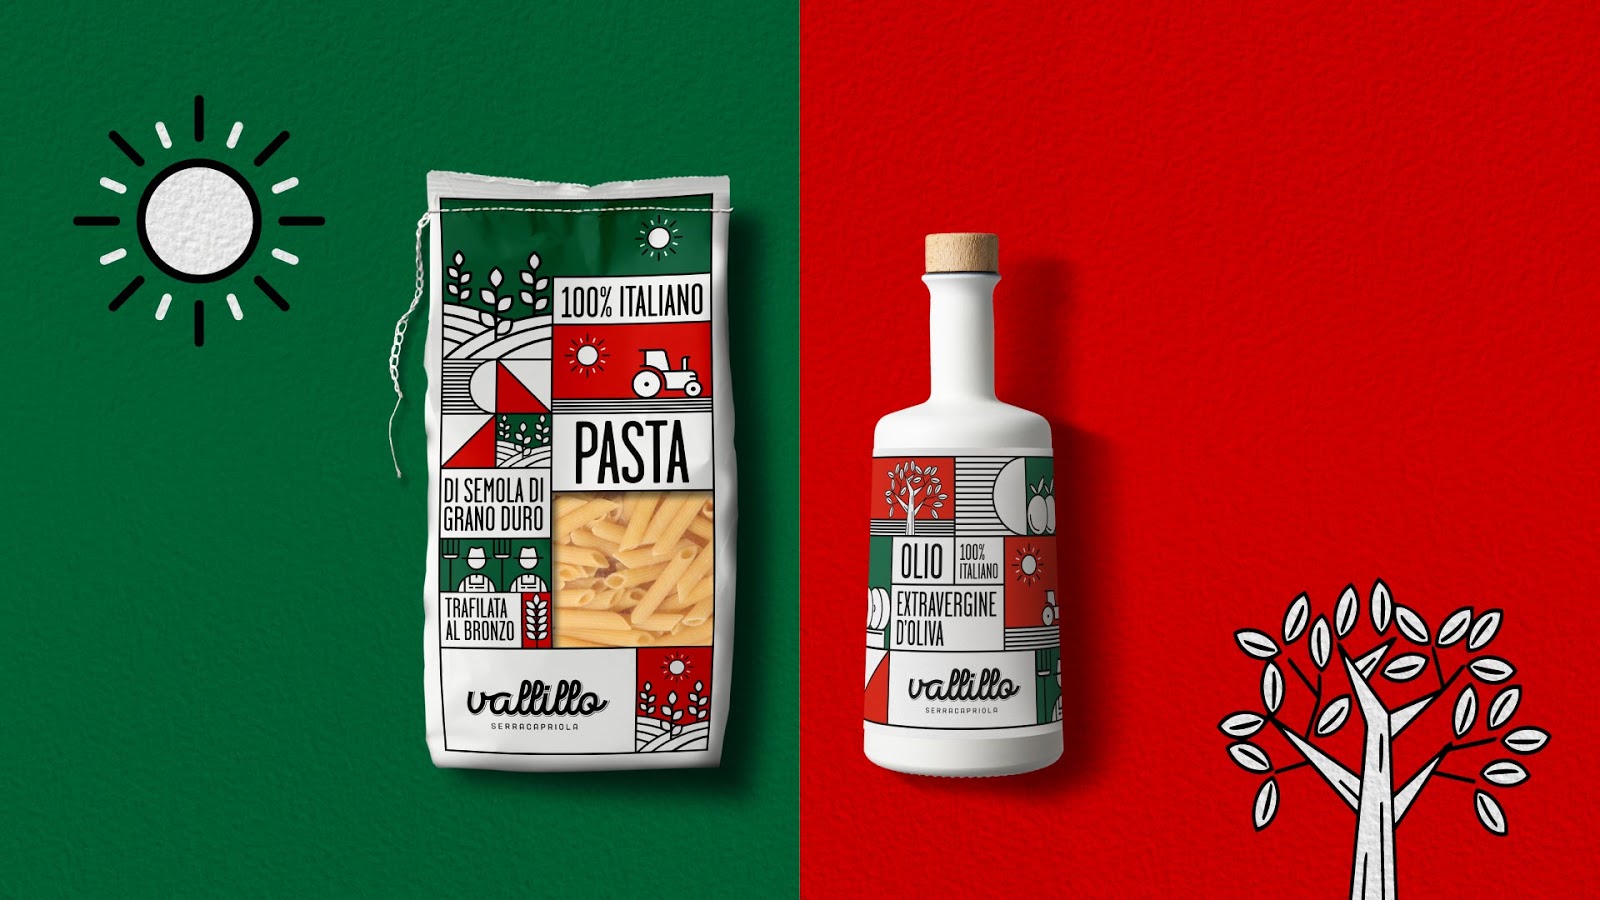 意大利面条酒西安oe欧亿体育app官方下载
品牌策划包装设计VI设计logo设计